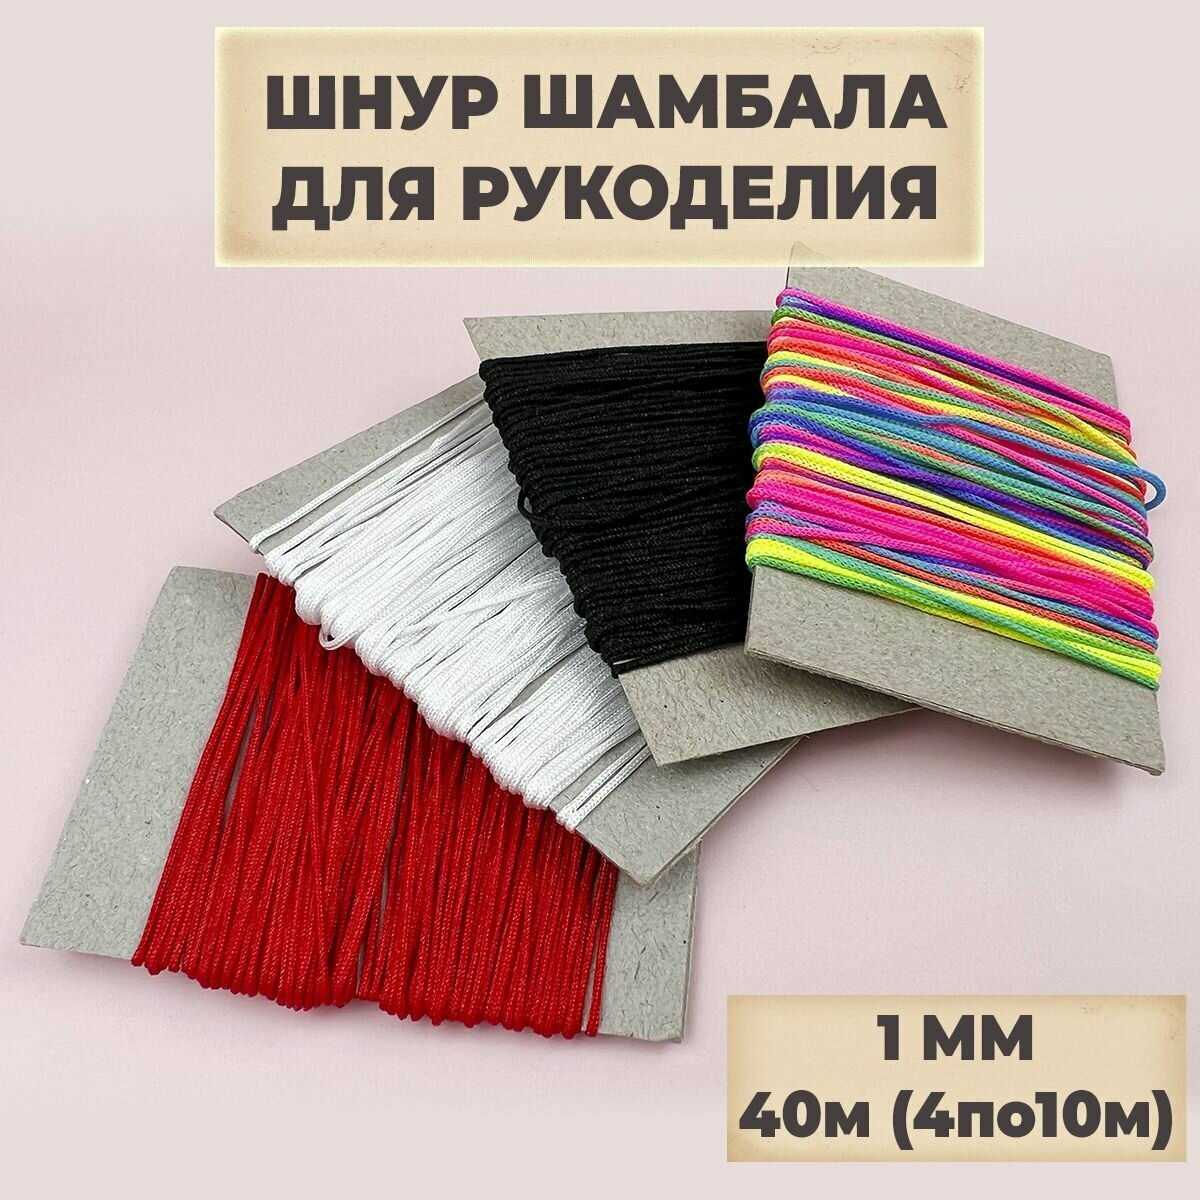 Нить для рукоделия, шнур для плетения браслетов, шамбала, нейлоновая, 40м (4 цвета по 10м), 1мм